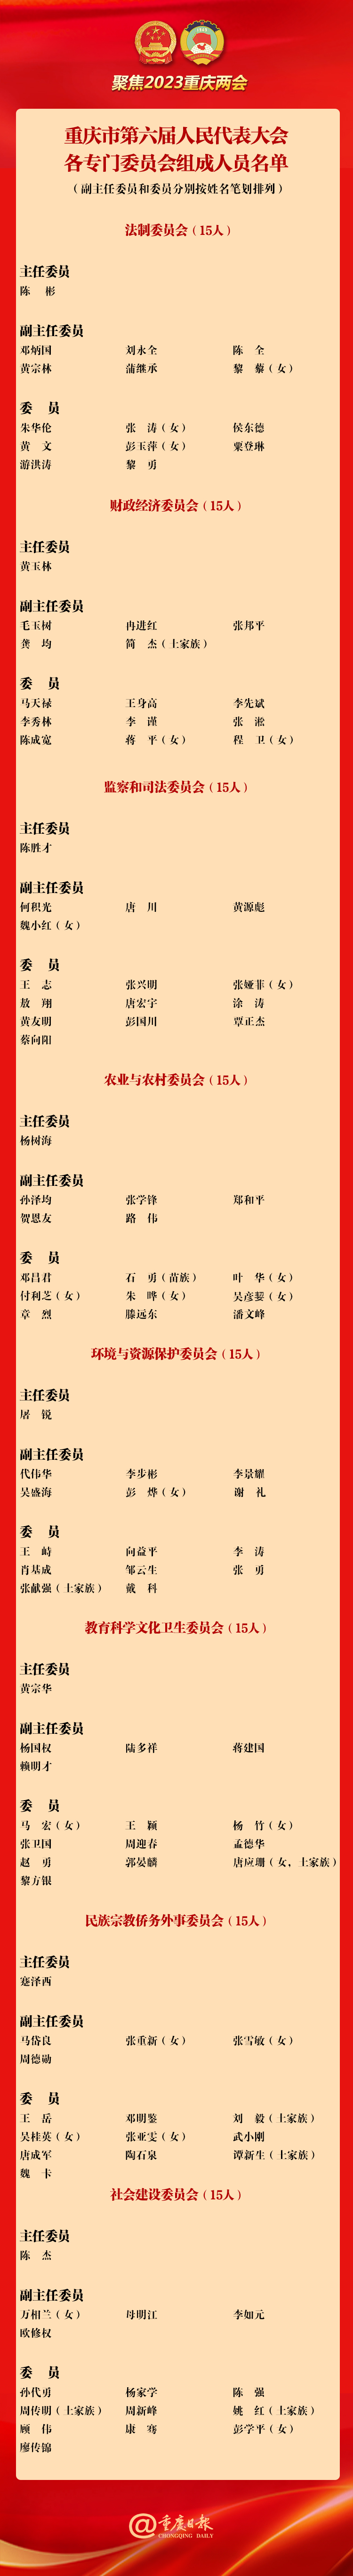 重庆市第六届人民代表大会各专门委员会组成人员名单